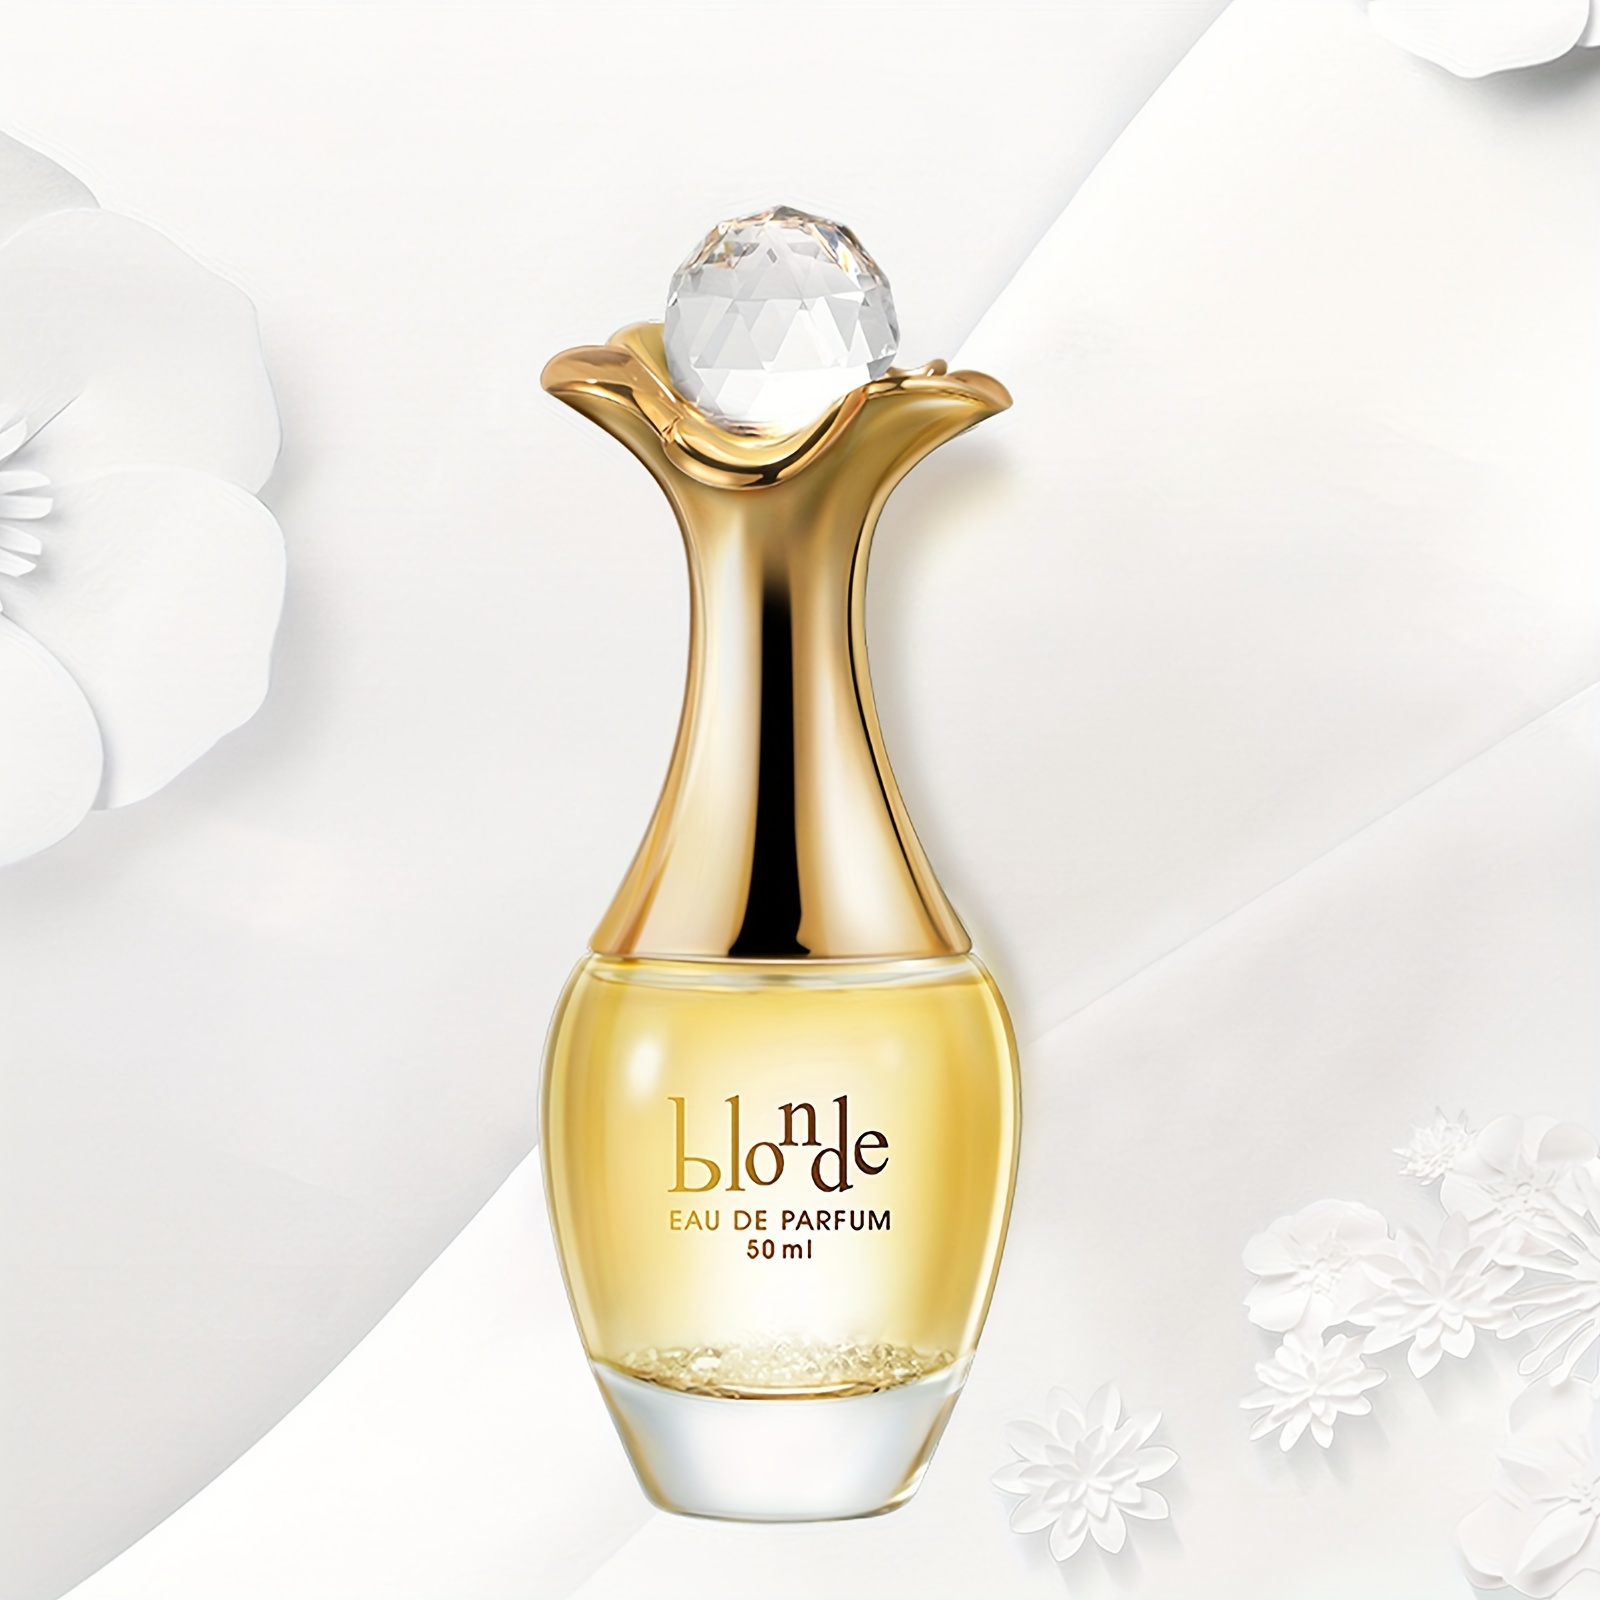 

Un parfum de 50 ml pour femmes, une fragrance rafraîchissante et longue durée avec des notes florales, idéal pour les rendez-vous et la vie quotidienne, un cadeau parfait pour elle.